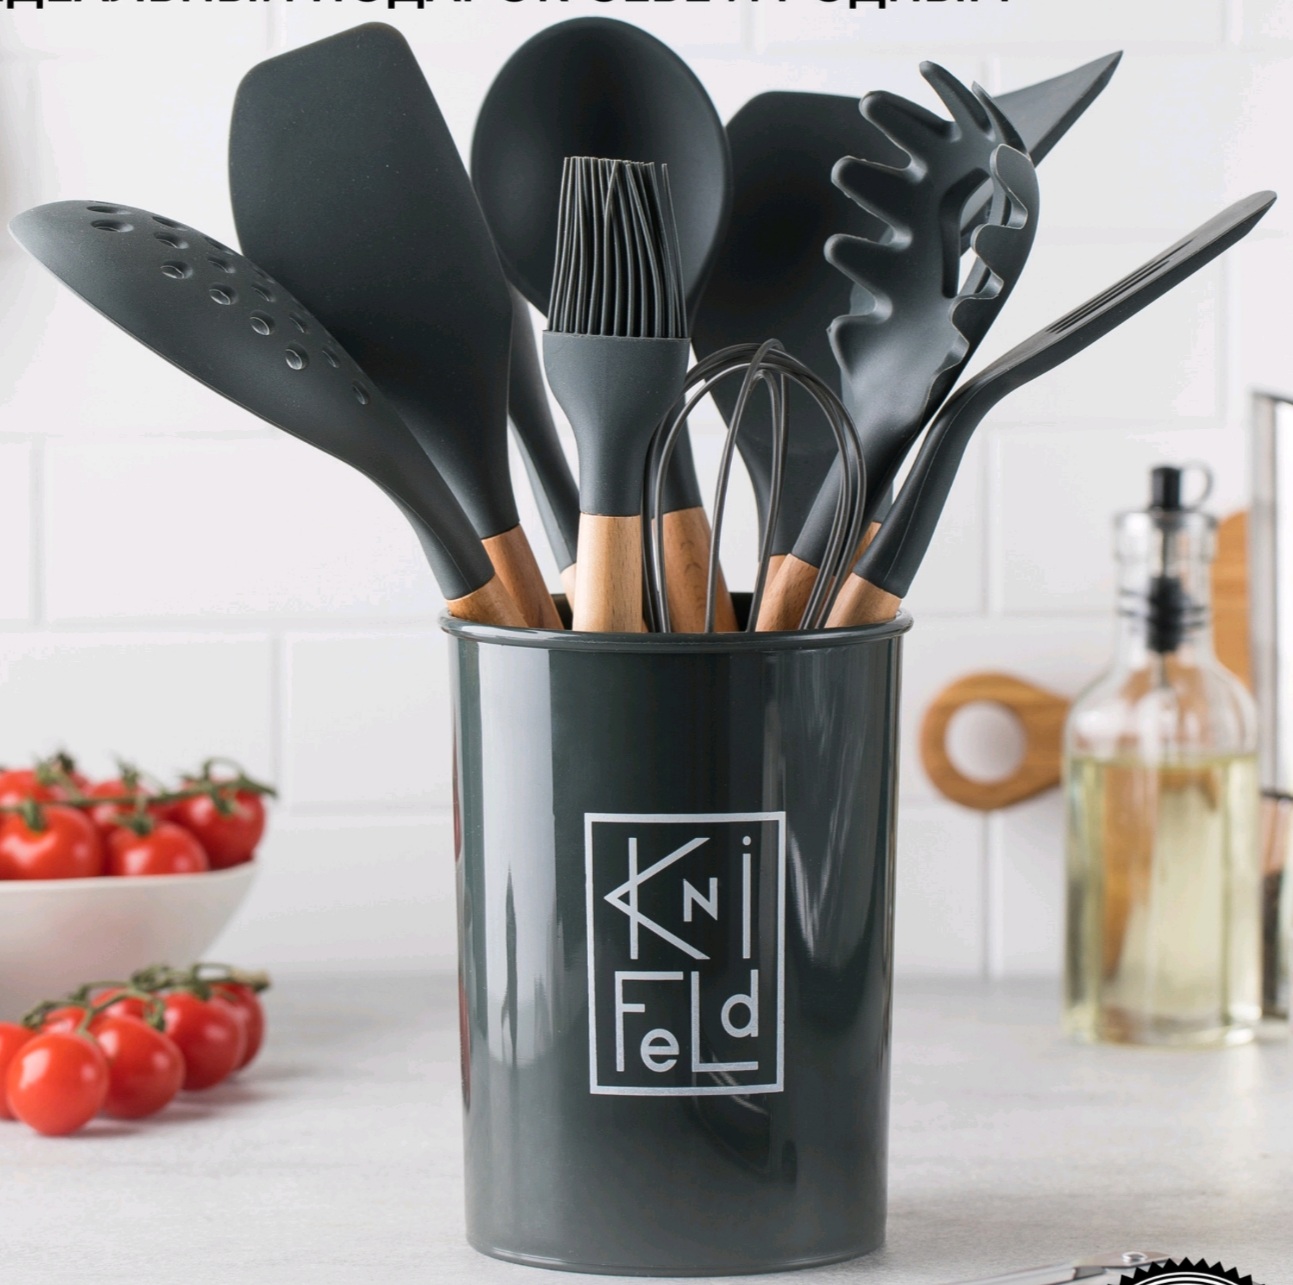  кухонных принадлежностей Knifeld 12 предметов | отзывы